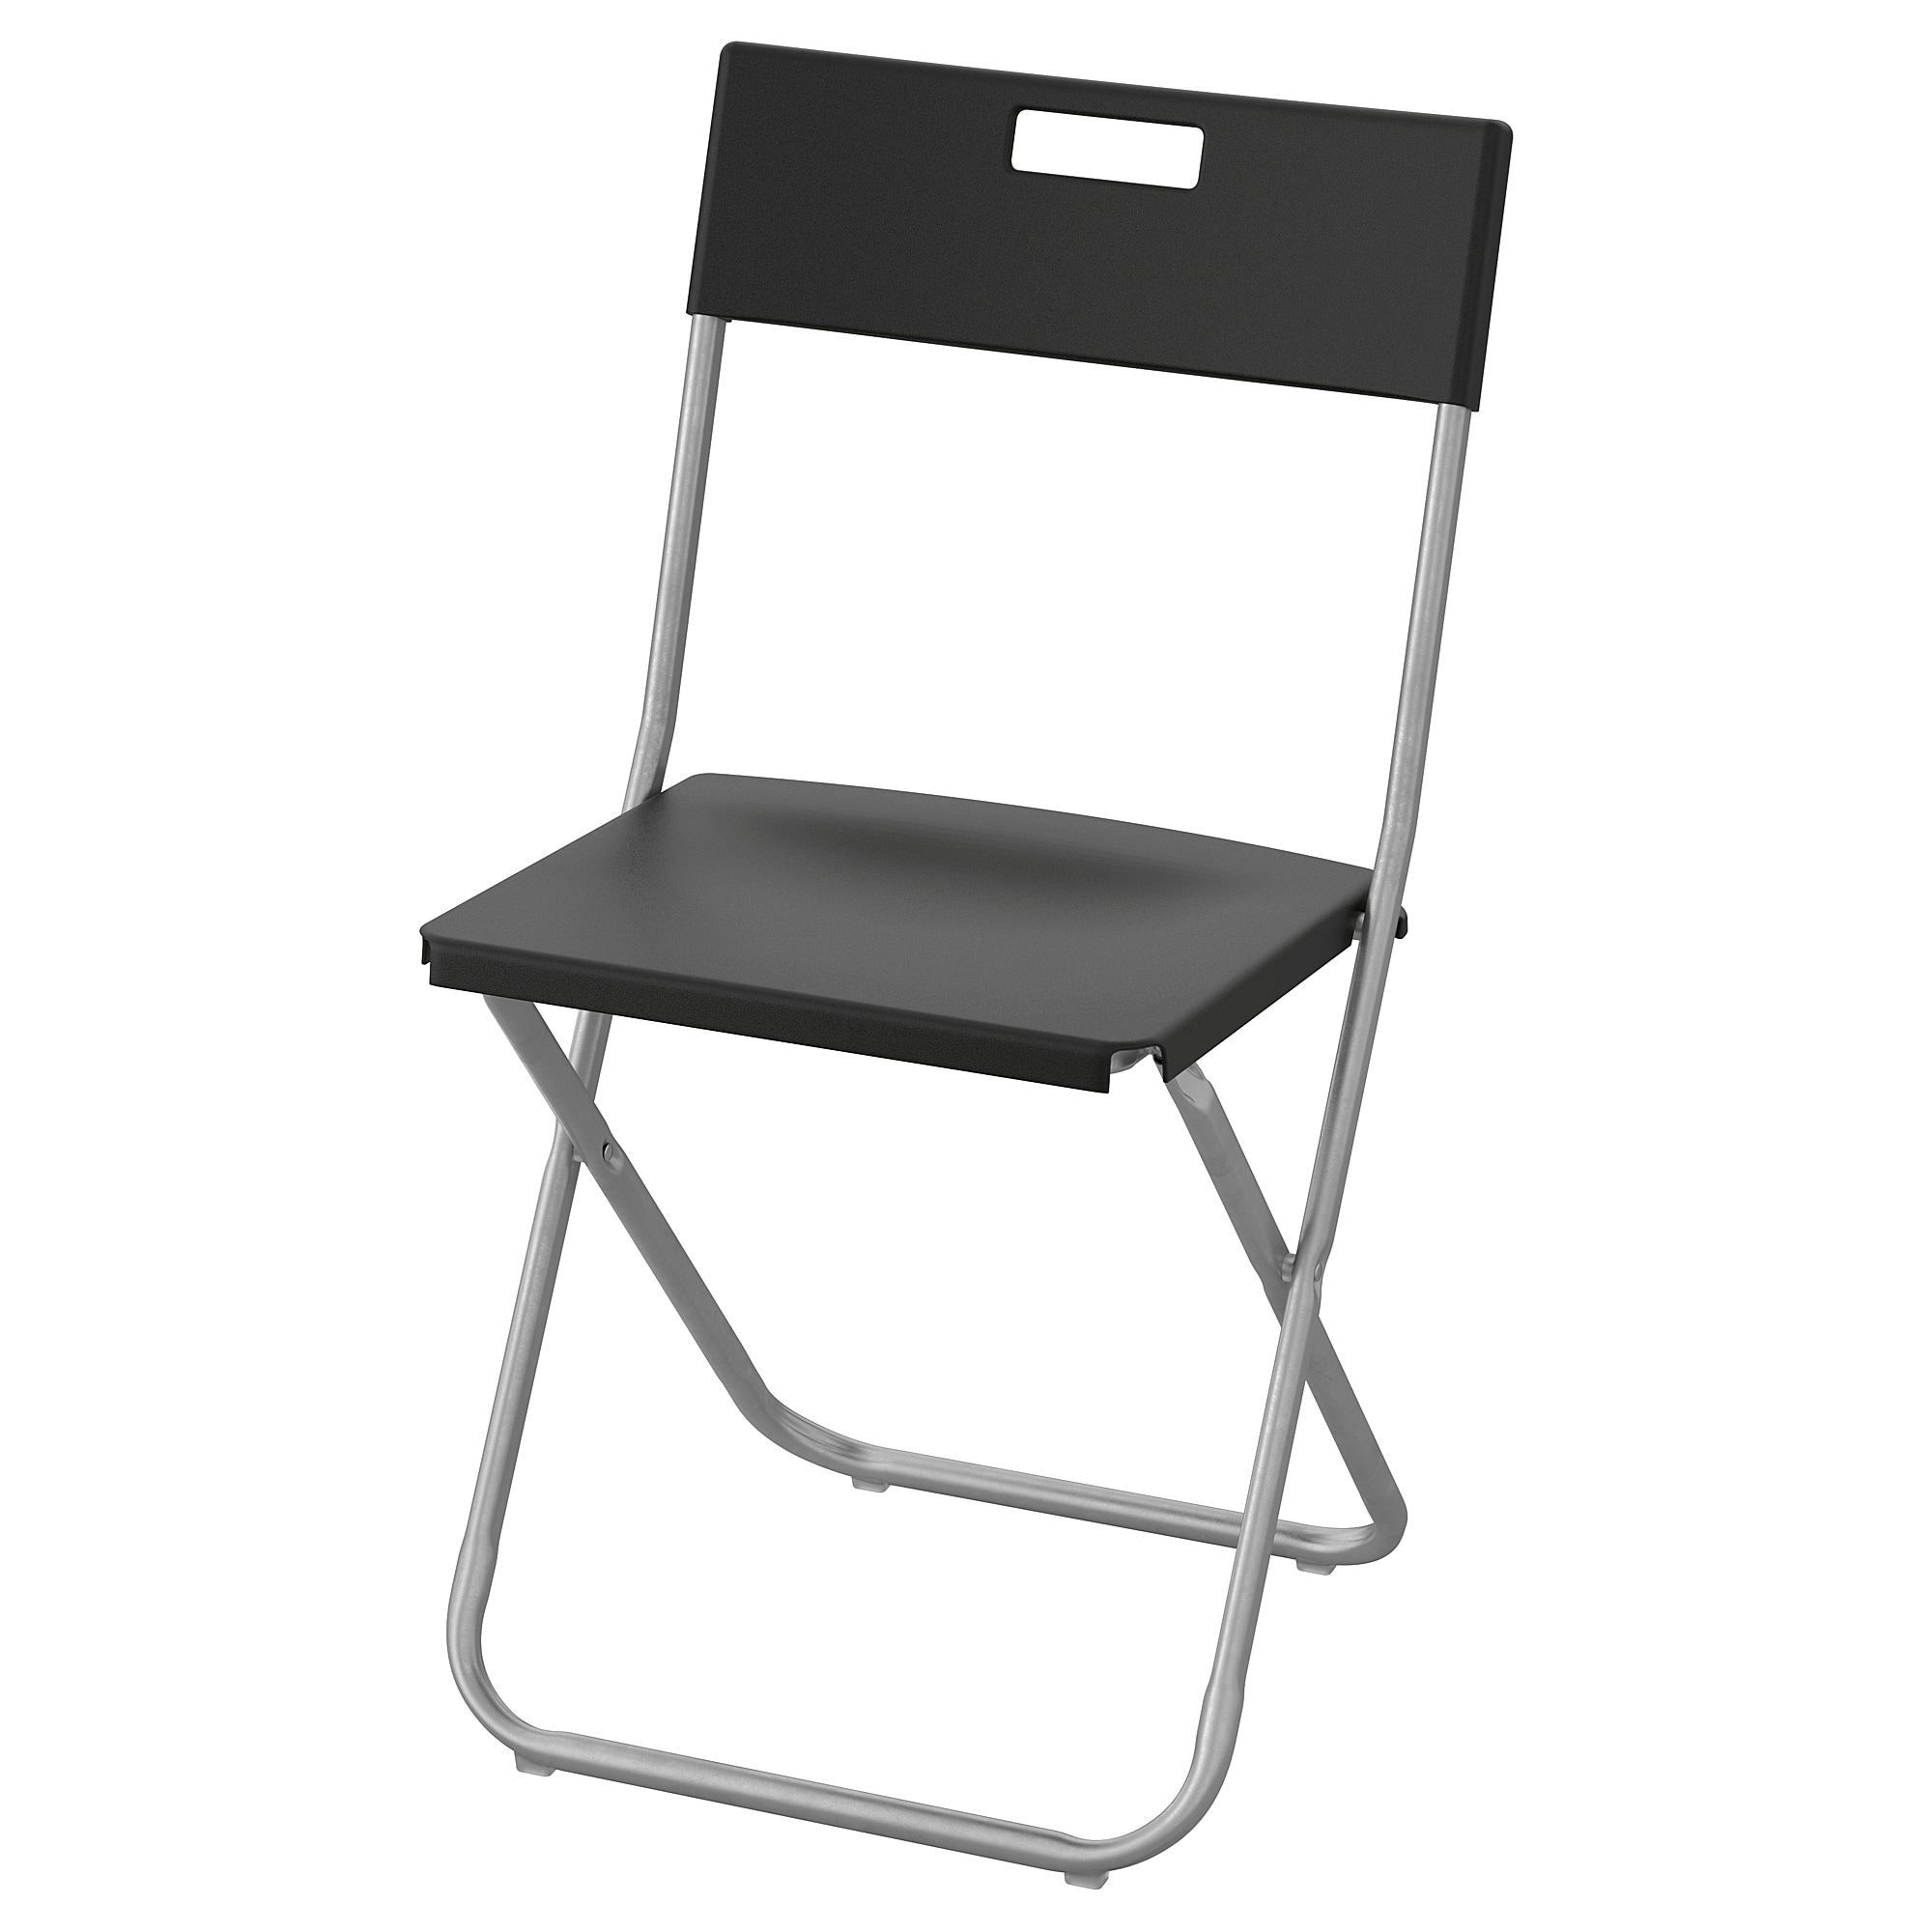 Складные стулья отзывы. Стул Гунде икеа. Ikea стул Гунде складной. Стул складной икеа черный. Гунде стул складной черный 103.608.79.